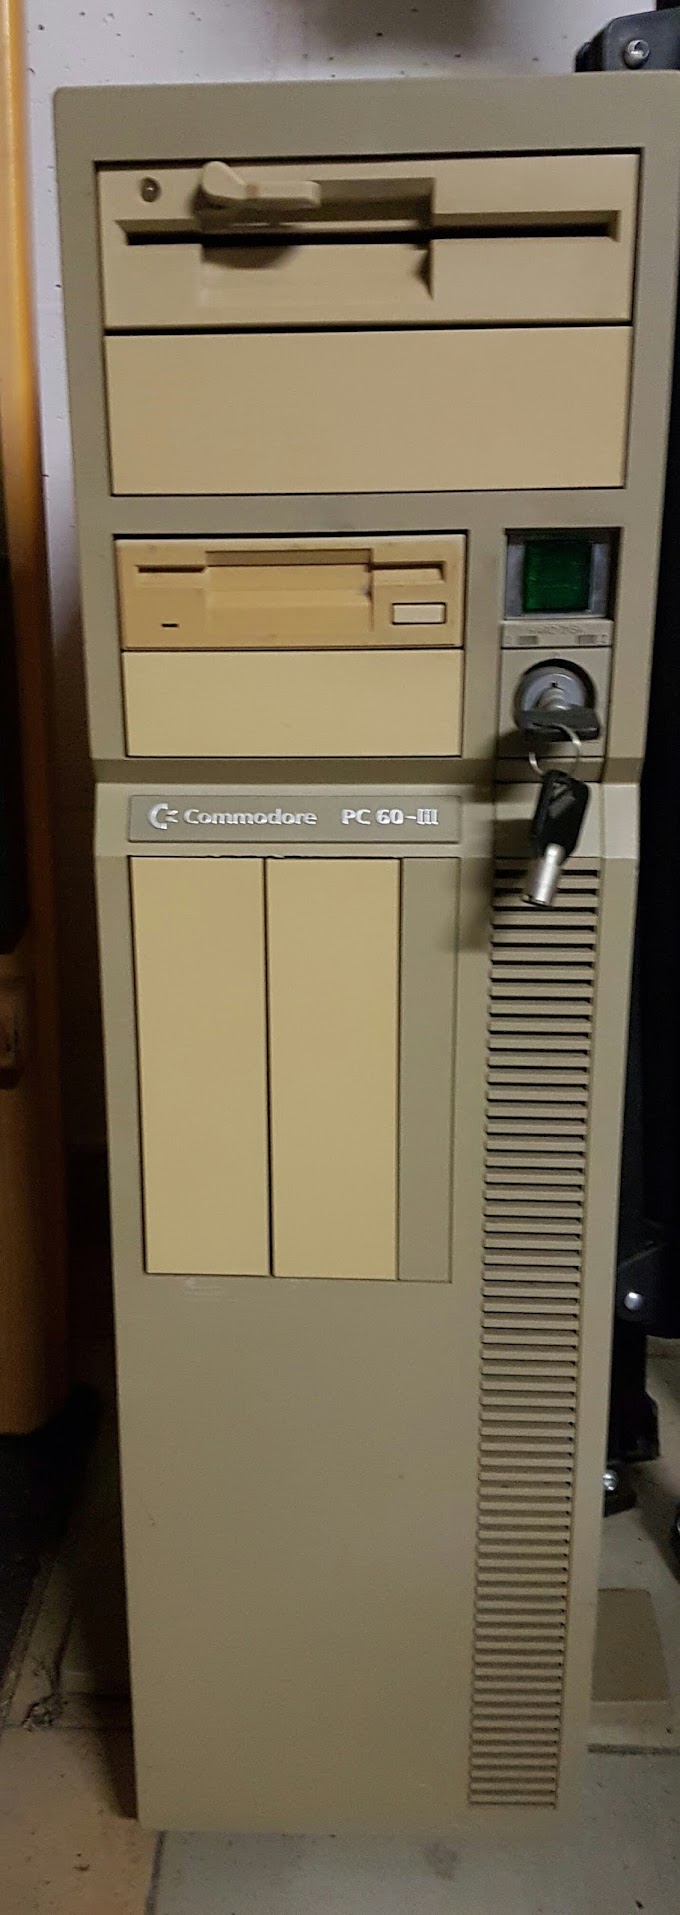 Commodore PC60-III